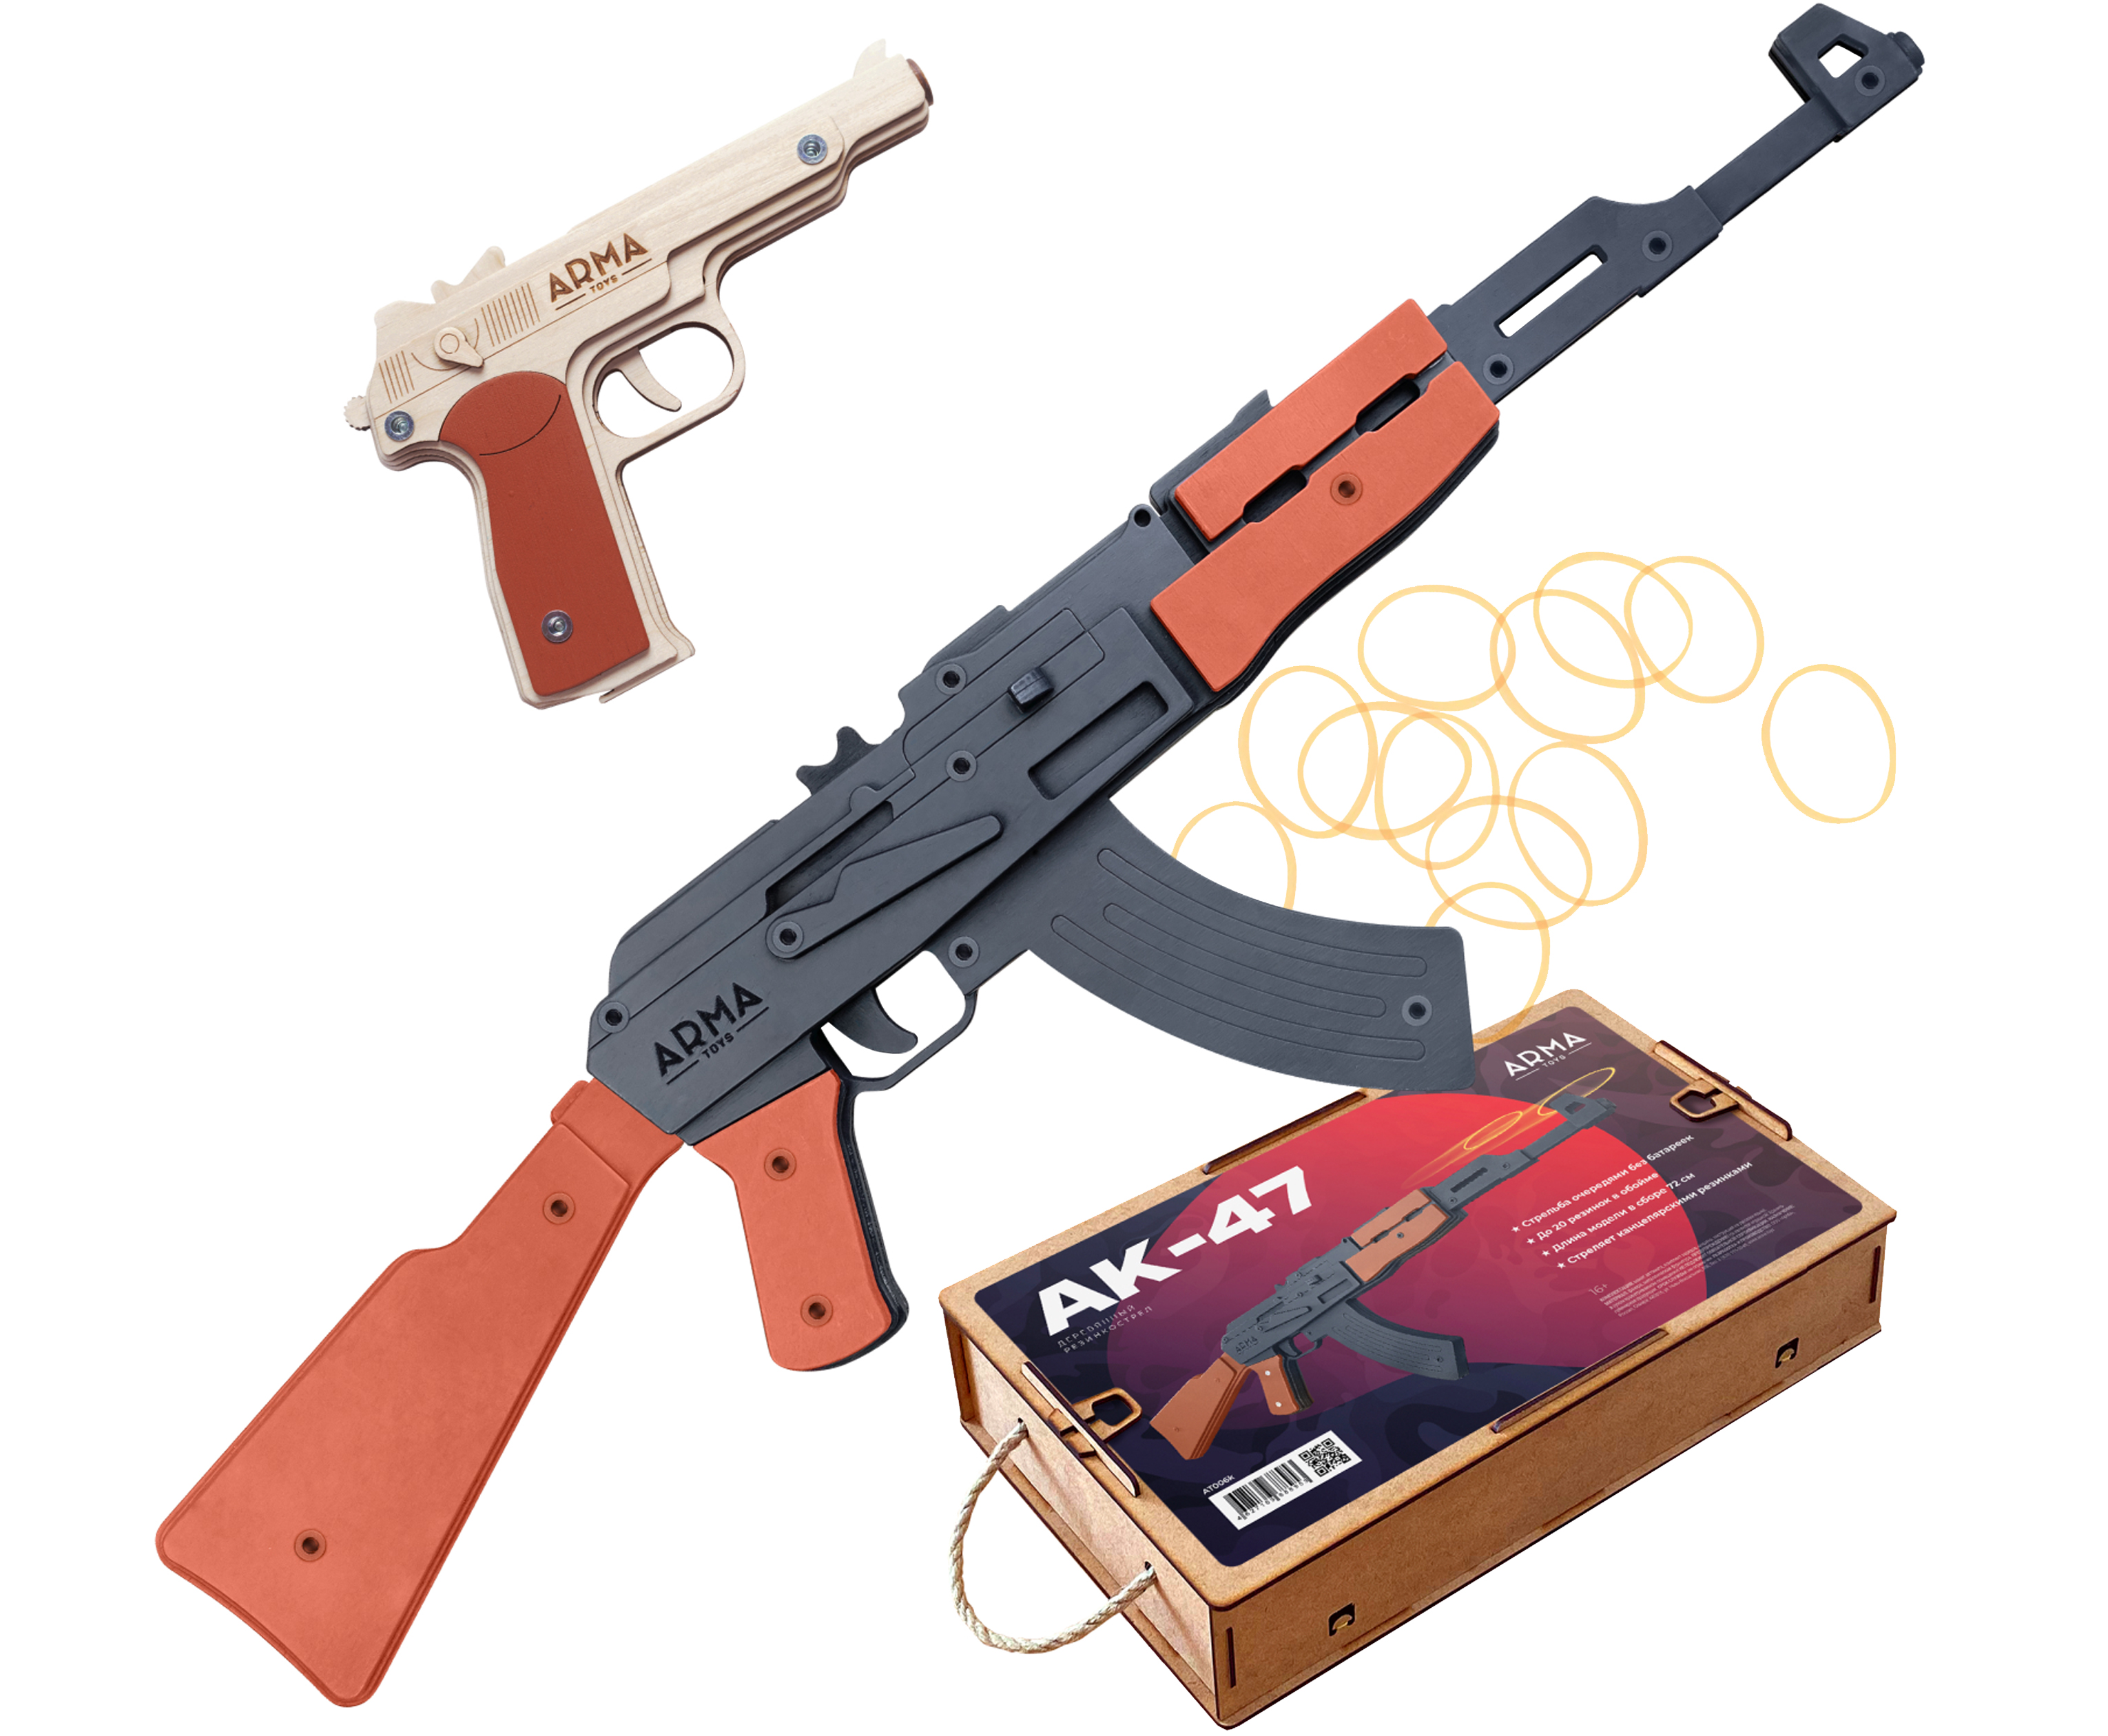 Набор игрушечных резинкострелов Arma toys Военный специалист 2 битва за францию 2 arma toys автомат мп 40 и пистолет кольт резинкострелы в наборе